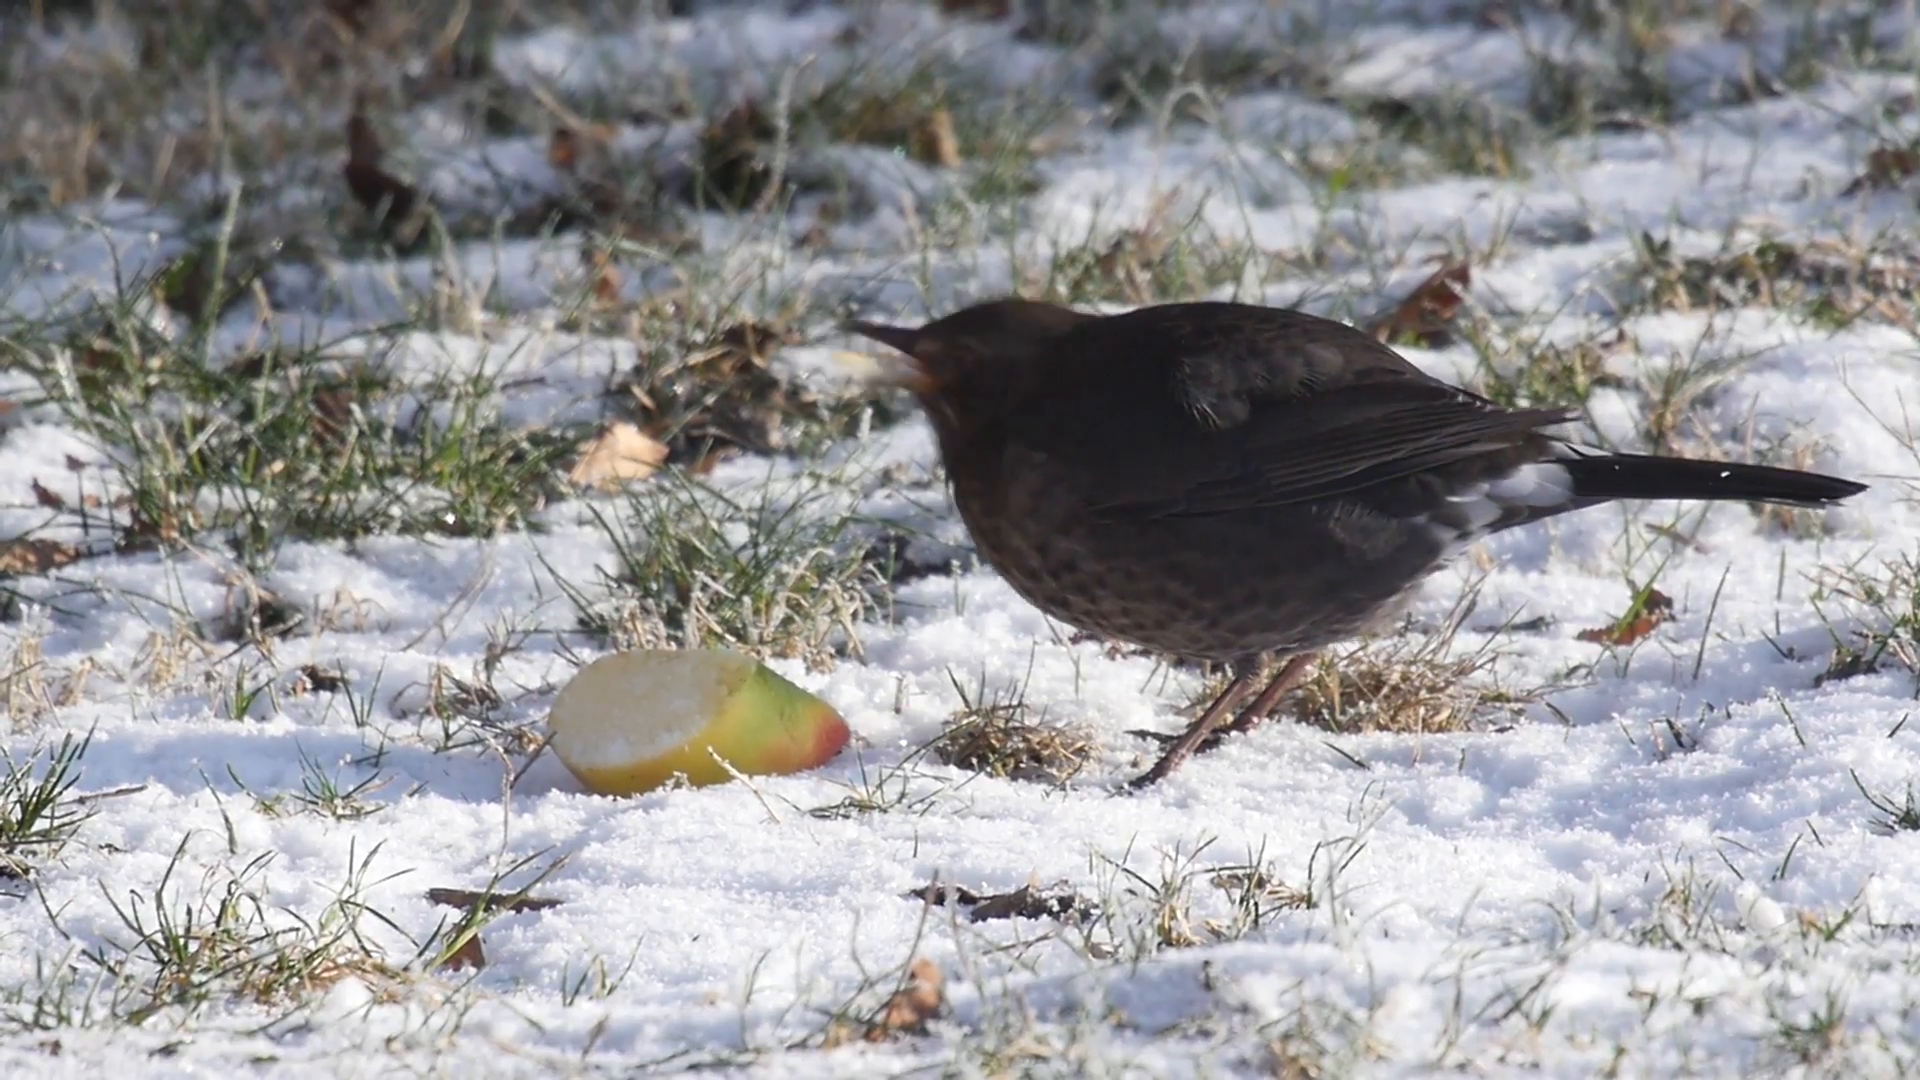 Slow motion of a female blackbird feeding on an apple in winter ...